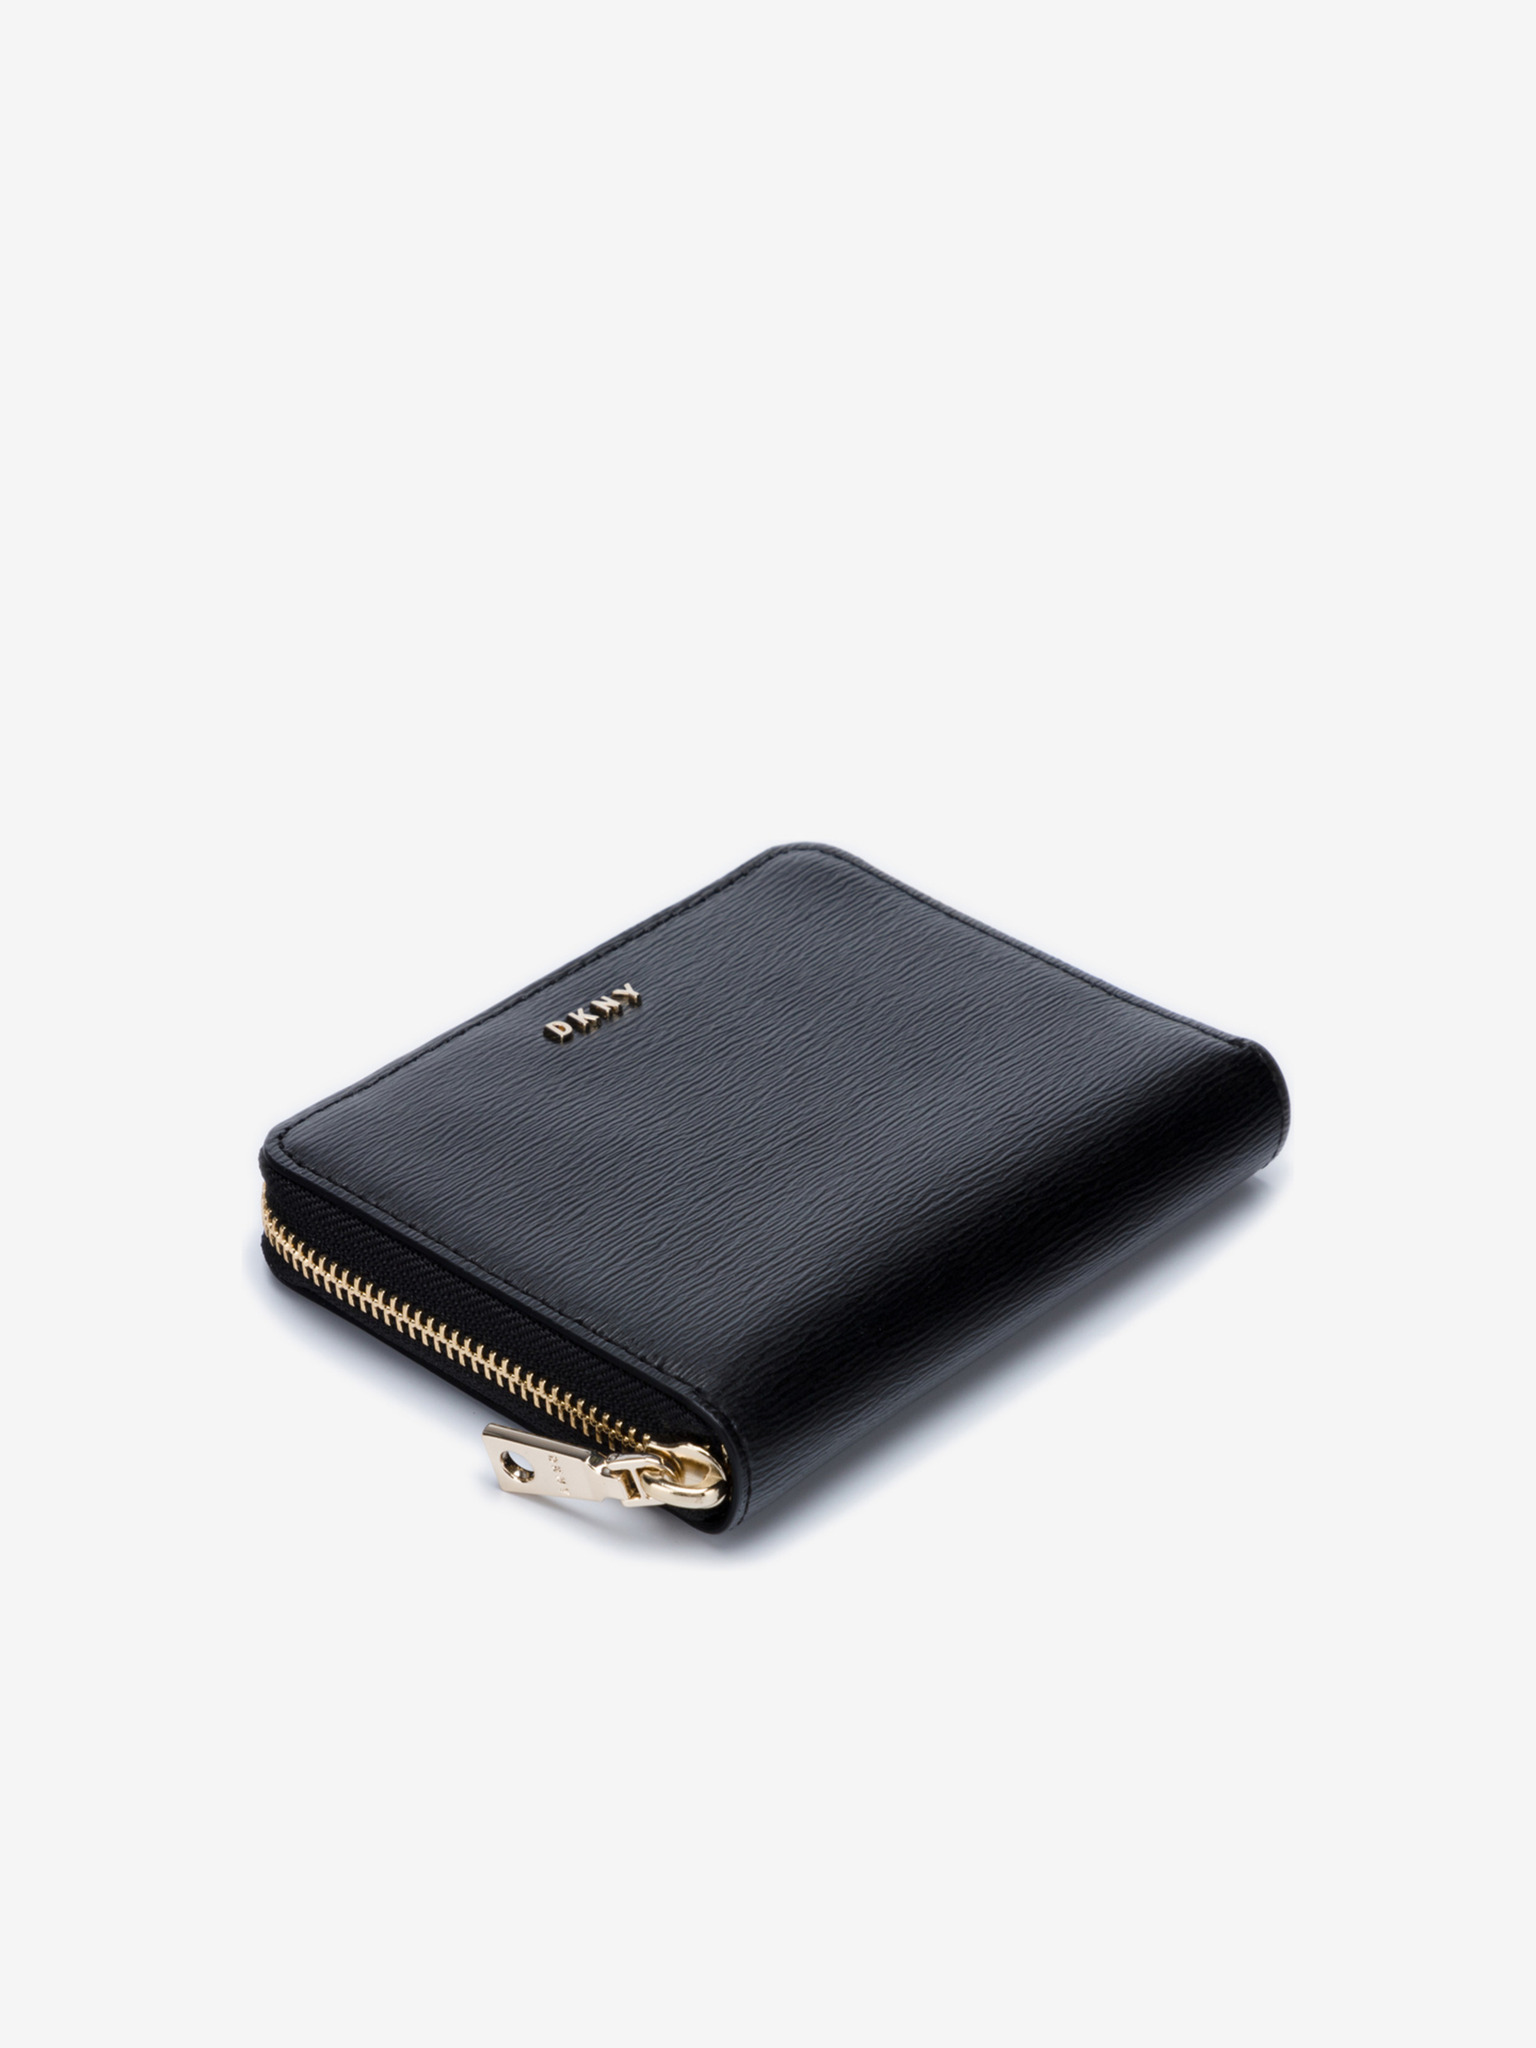 DKNY Wallet | Wallet, Wallets for women, Beautiful bags